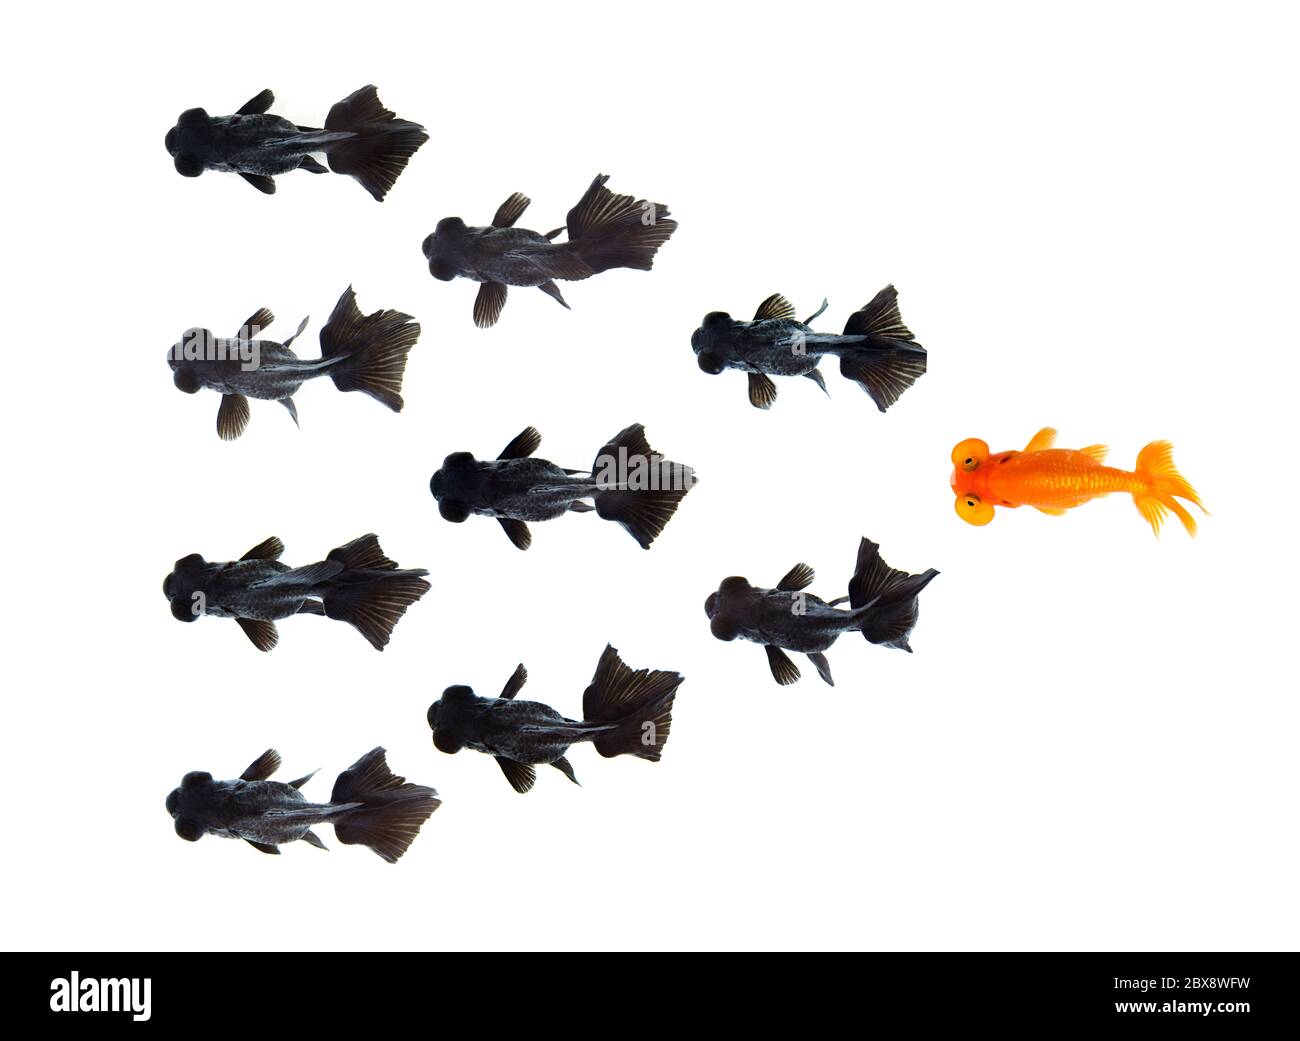 Un poisson rouge suivant un groupe de petits poissons rouges noirs isolés sur fond blanc représente une idée différente de faire des affaires. Concept d'entreprise. ANI Banque D'Images